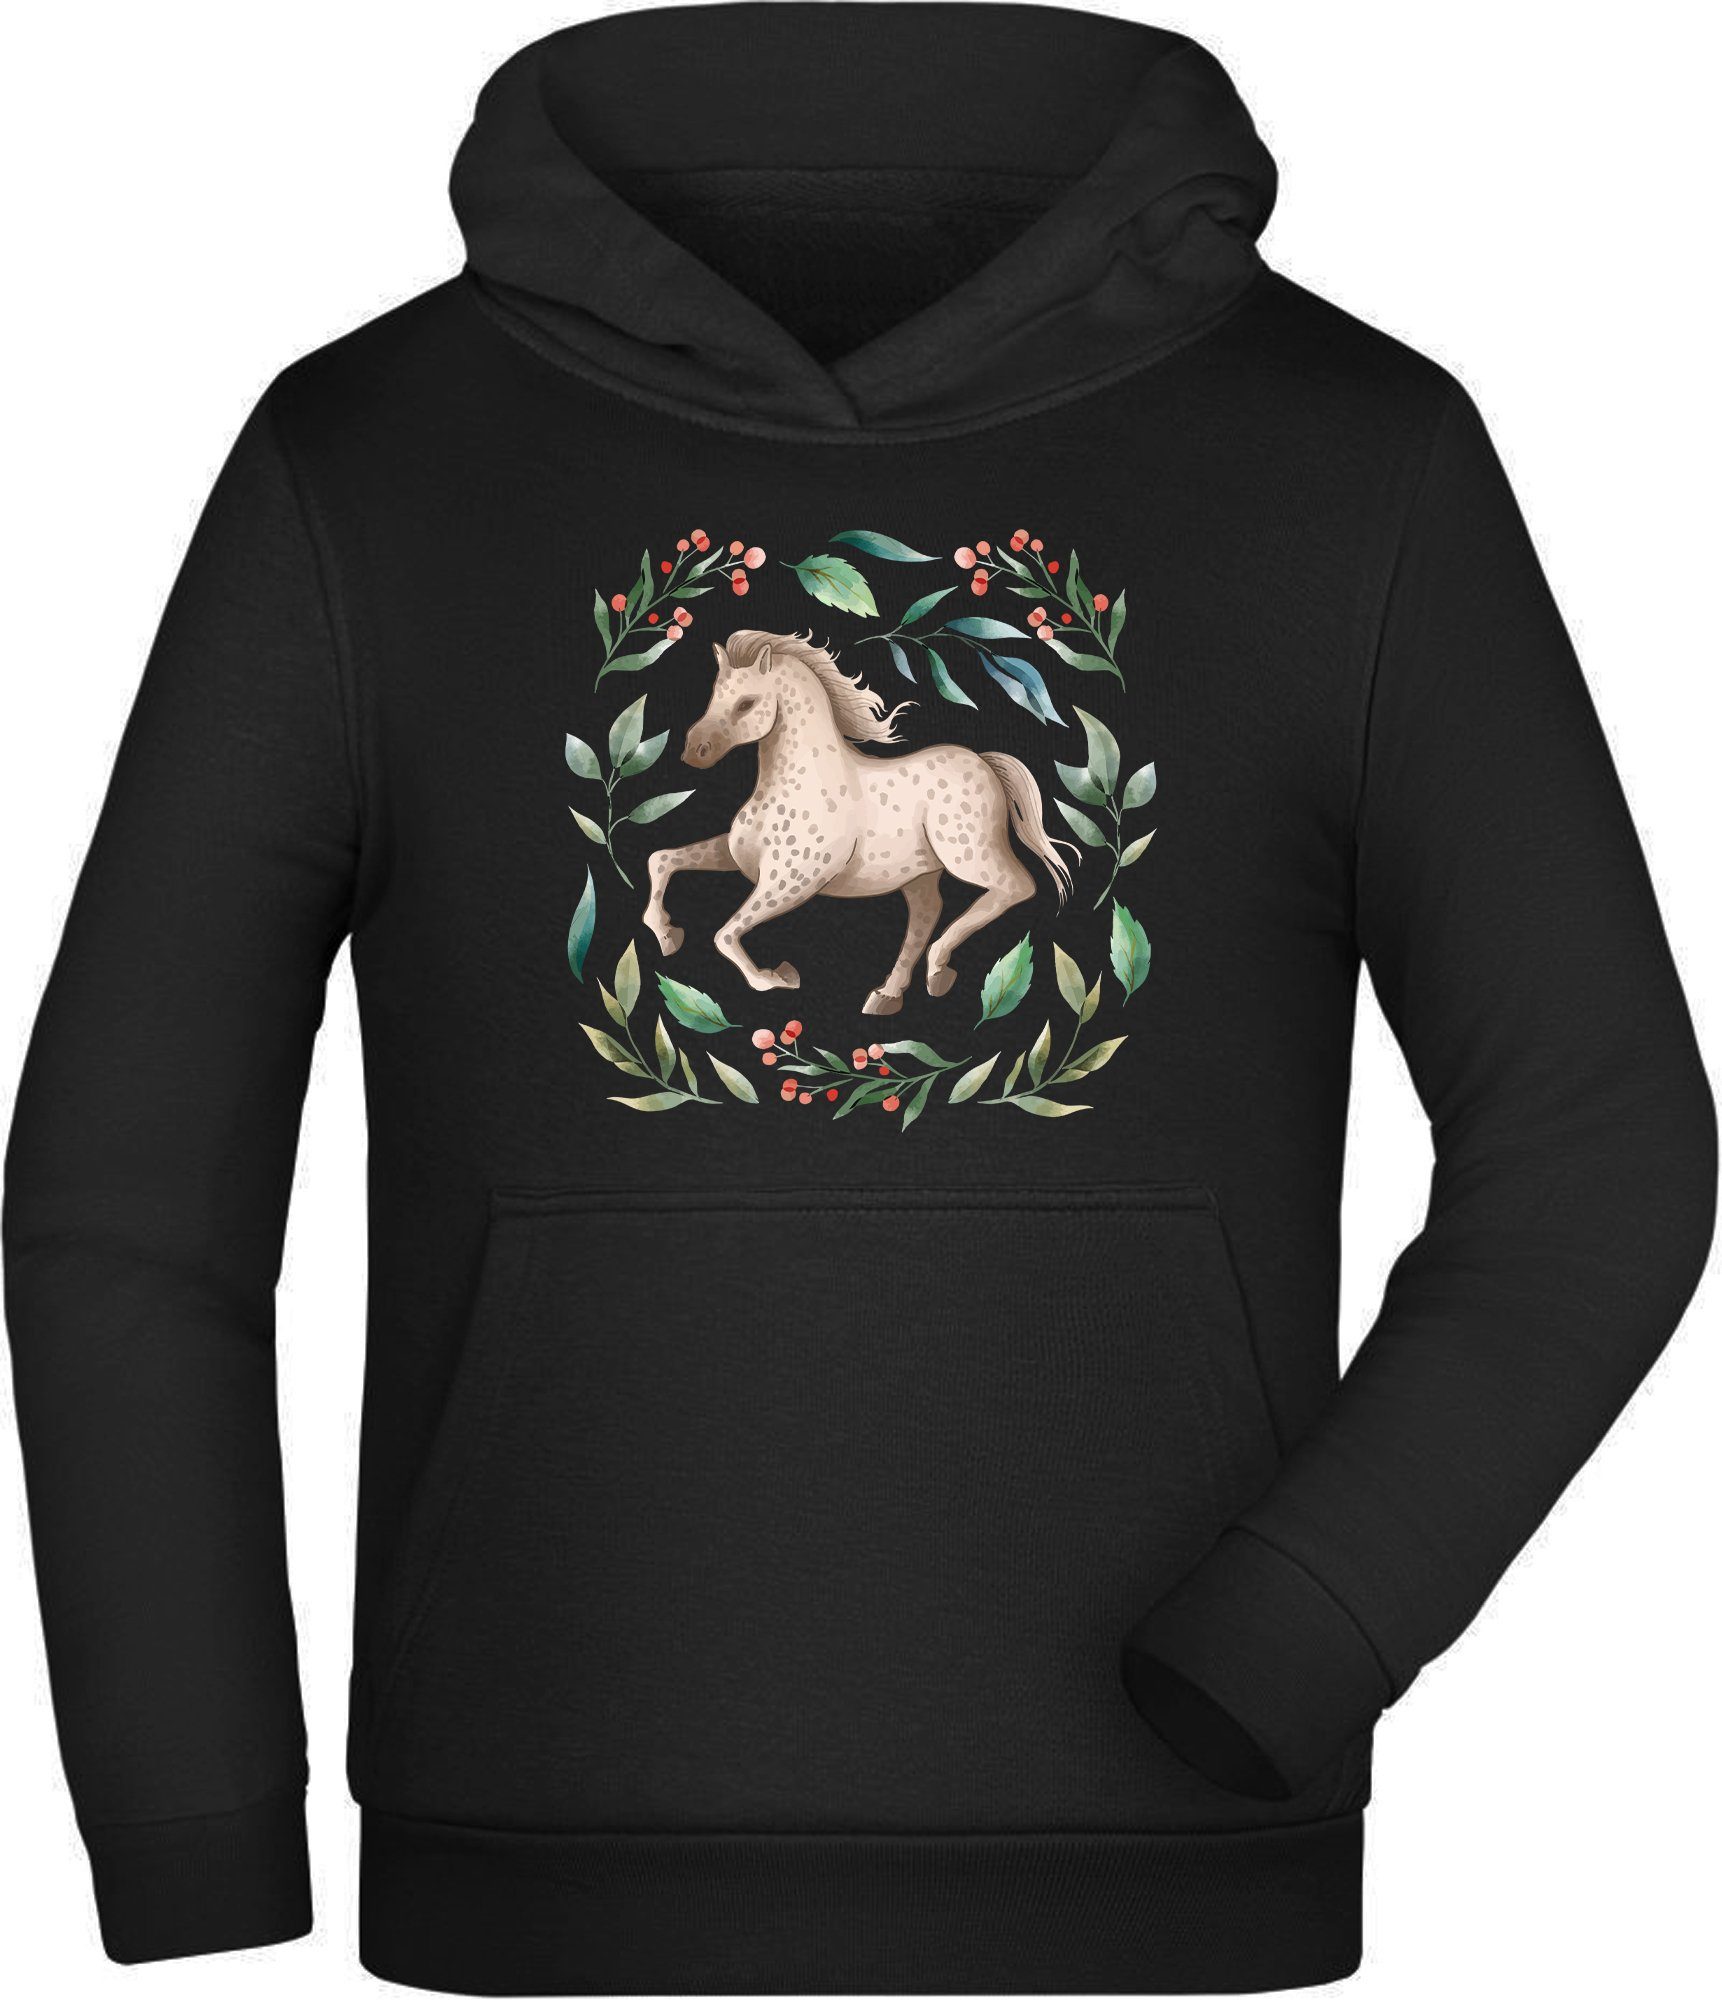 MyDesign24 Hoodie Kinder Kapuzen Sweatshirt Laufendes Pferd im Blumenkranz Kapuzensweater mit Aufdruck, i161 | Sweatshirts